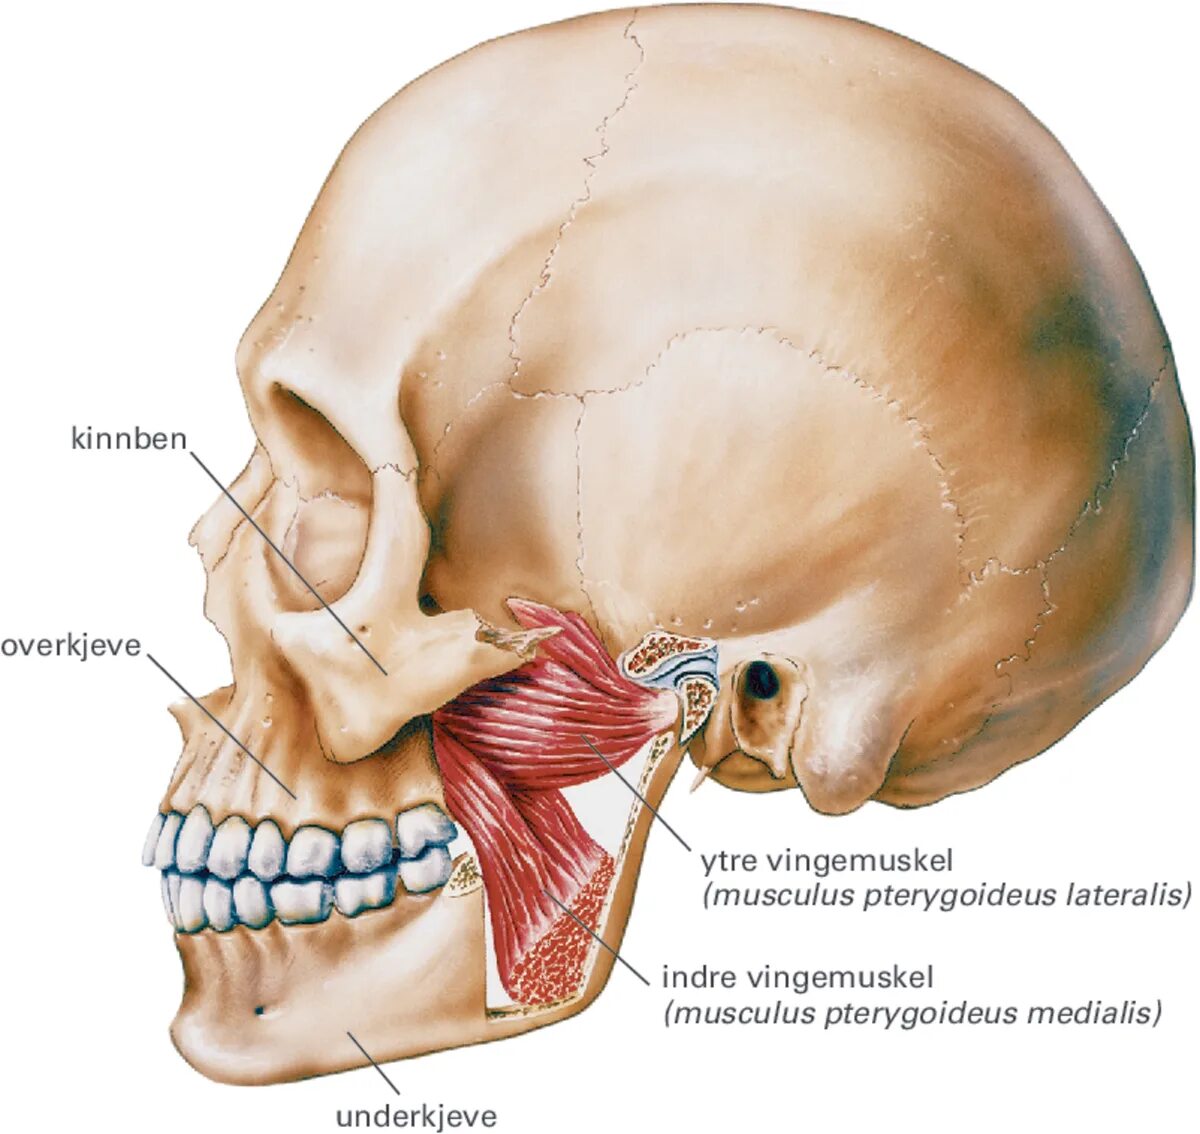 Внчс уха. Медиальная крыловидная мышца челюсти. Крыловидные мышцы челюсти анатомия. Жевательные мышцы челюсти анатомия. Череп анатомия нижнечелюстной сустав.